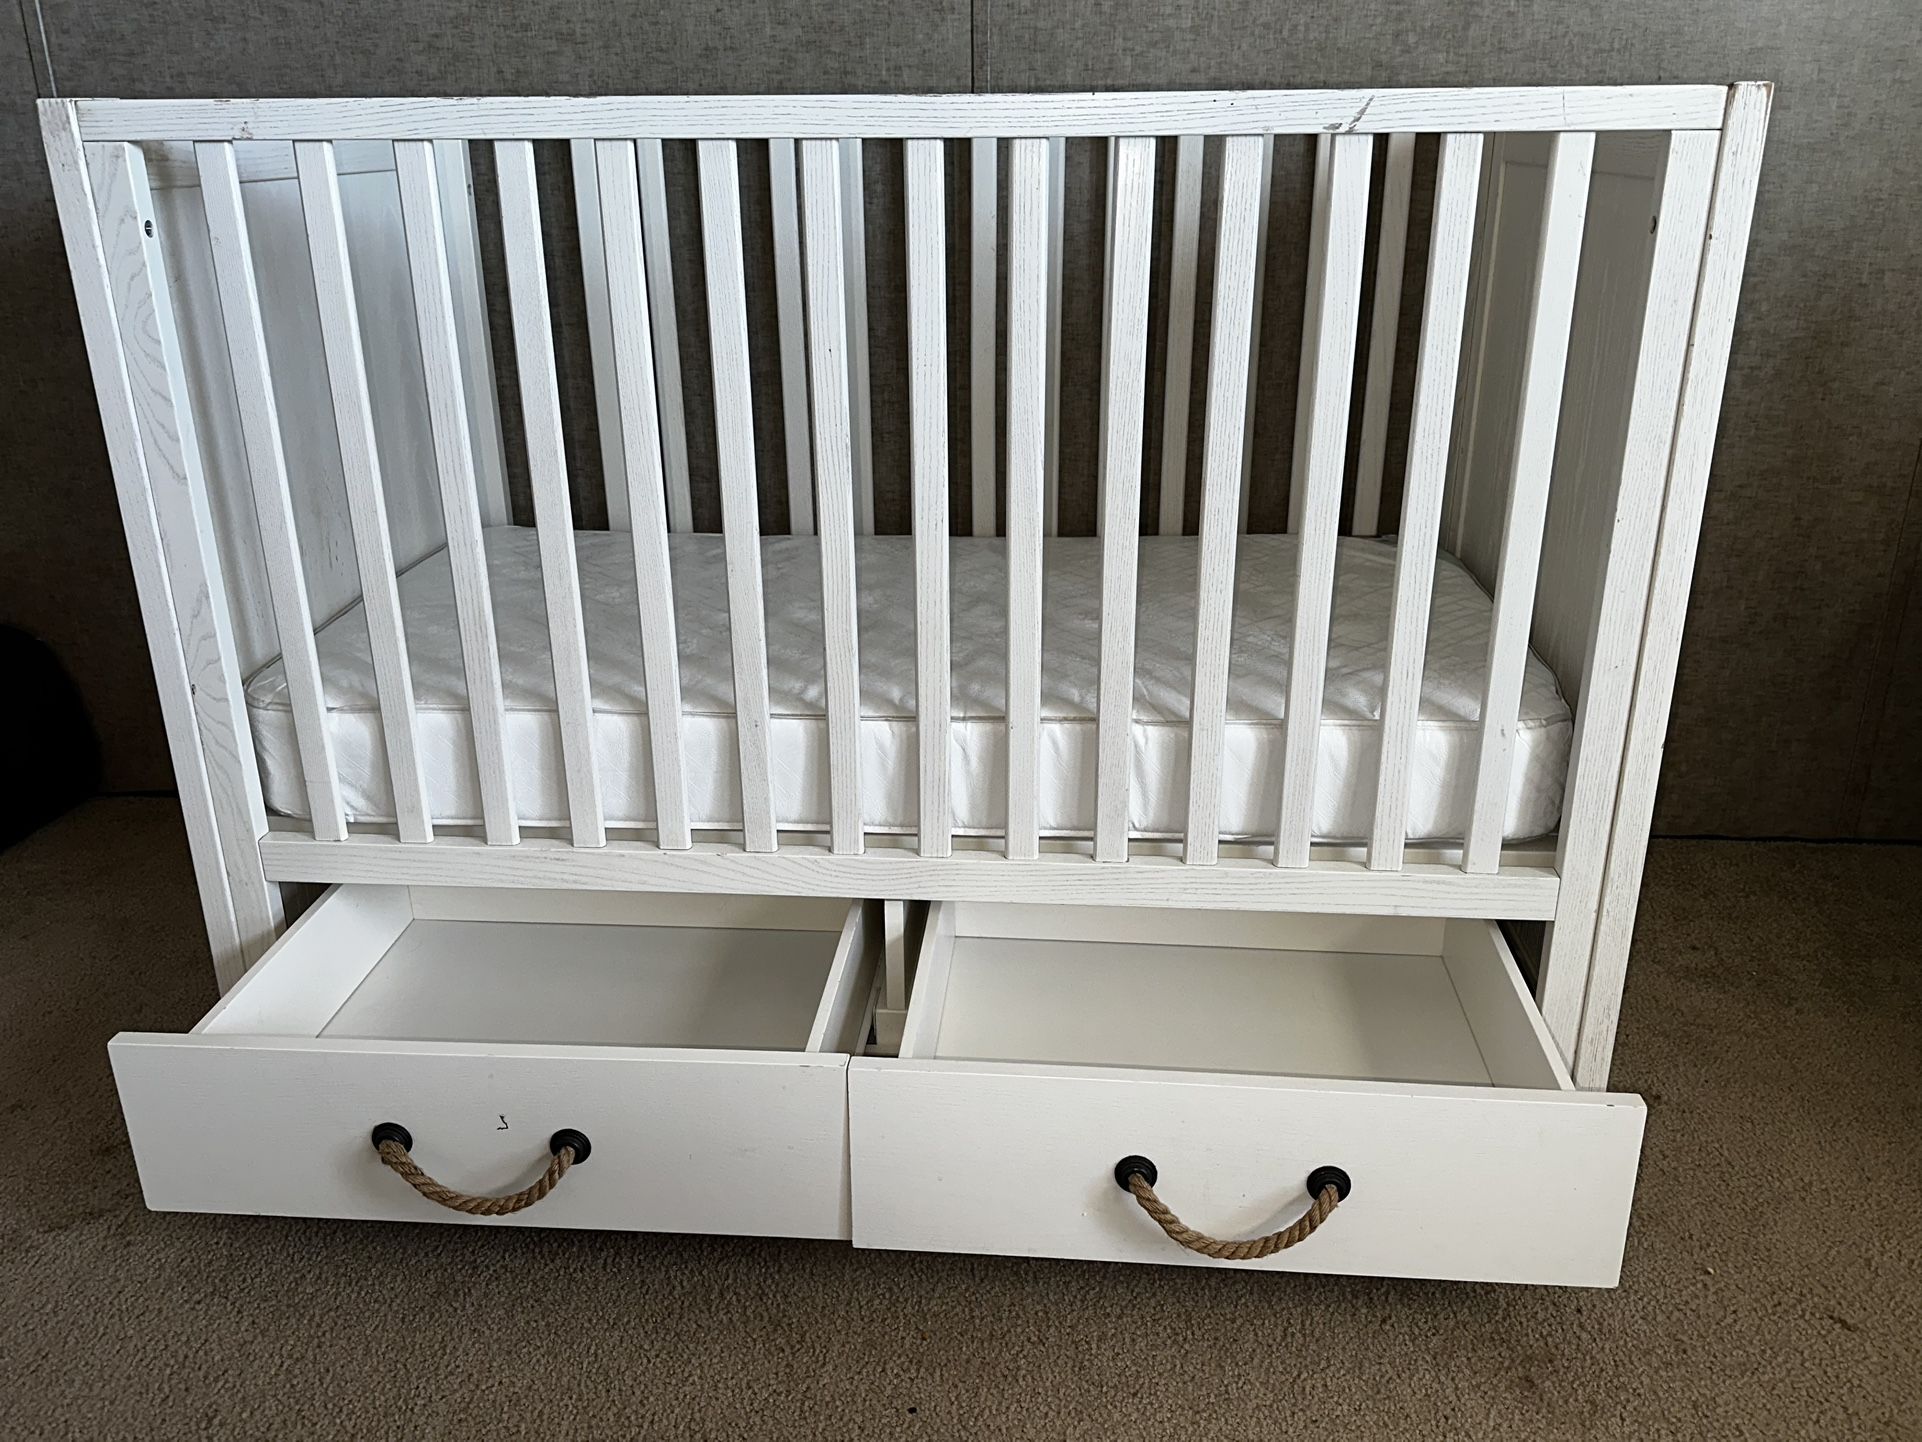 Baby Crib/toddler Bed